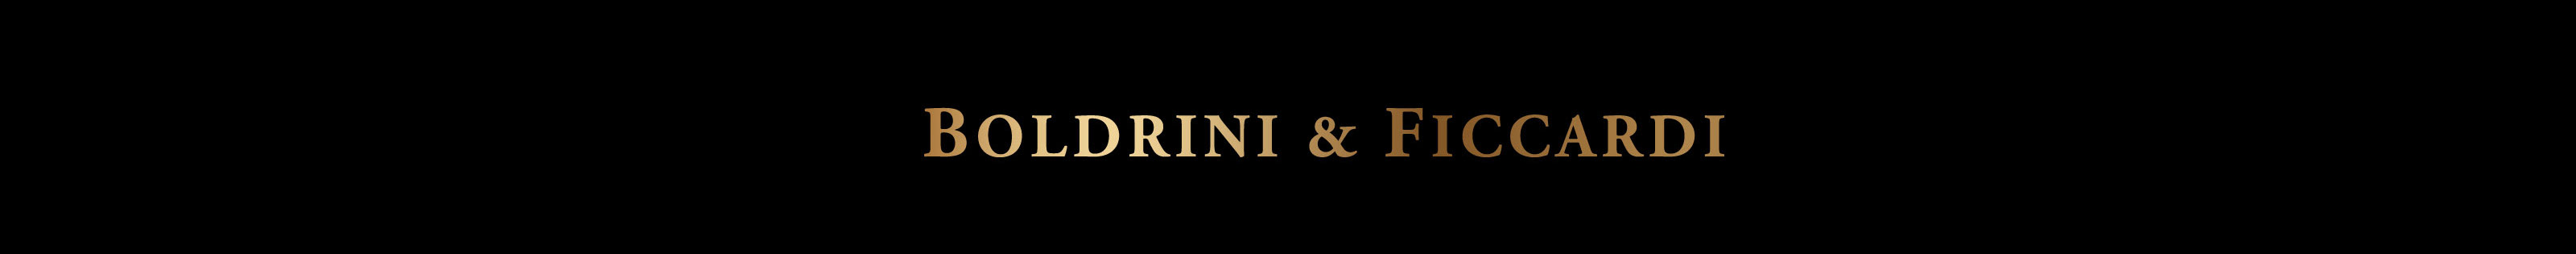 Gato Ficcardi (Boldrini & Ficcardi) BF's profile banner